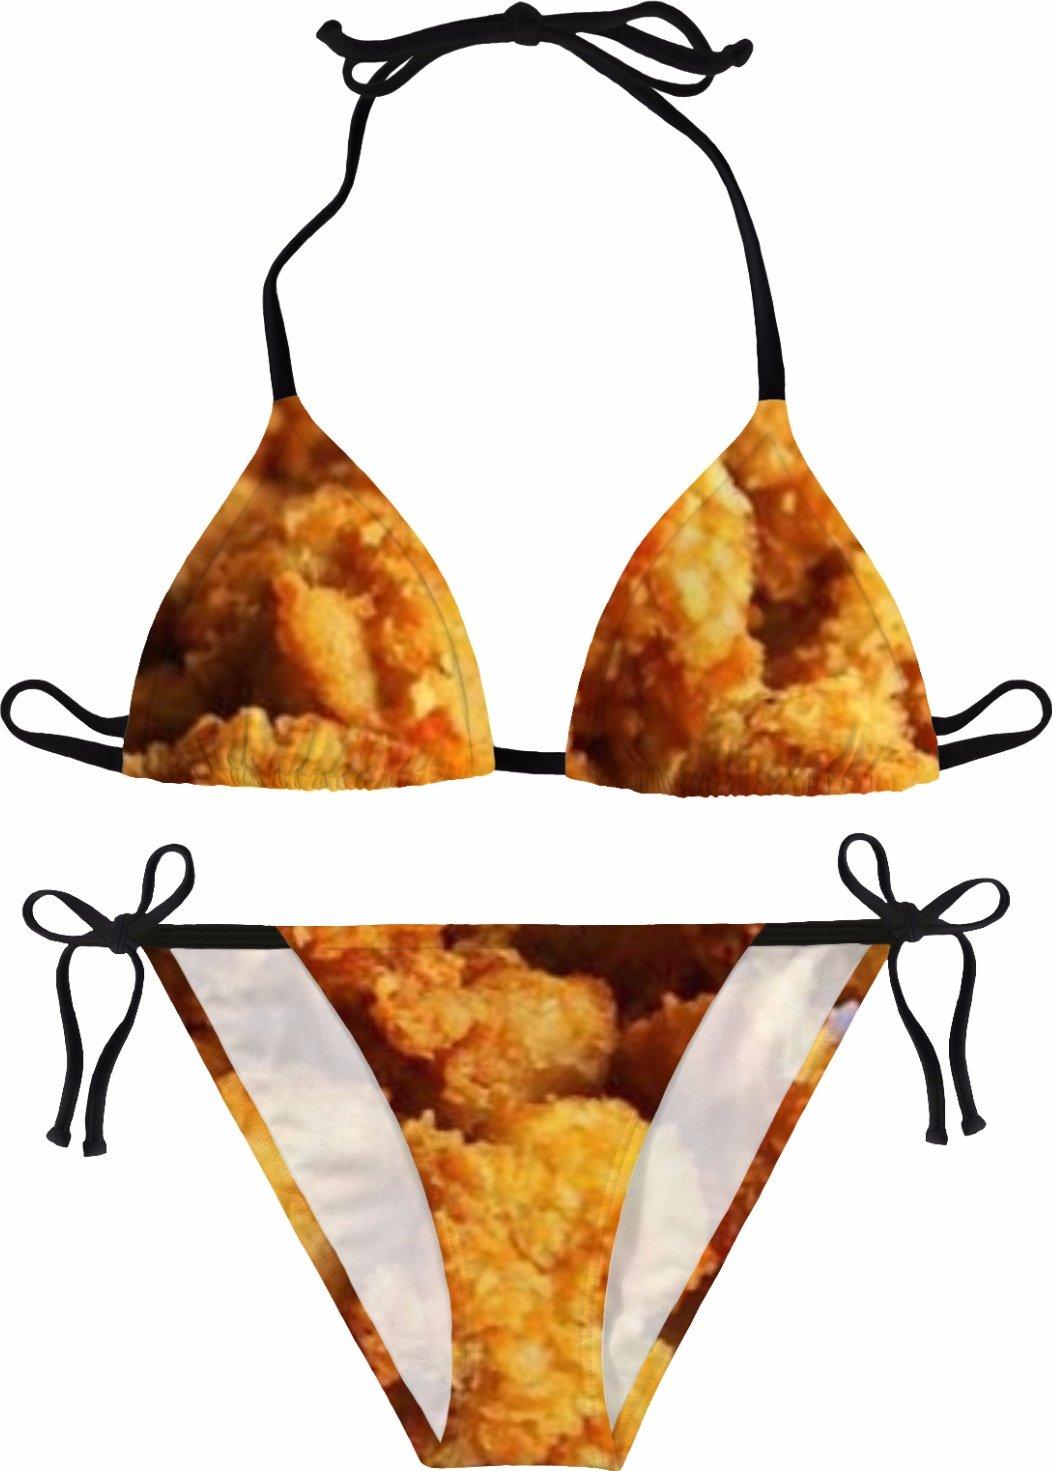 Chicken bikini pictures